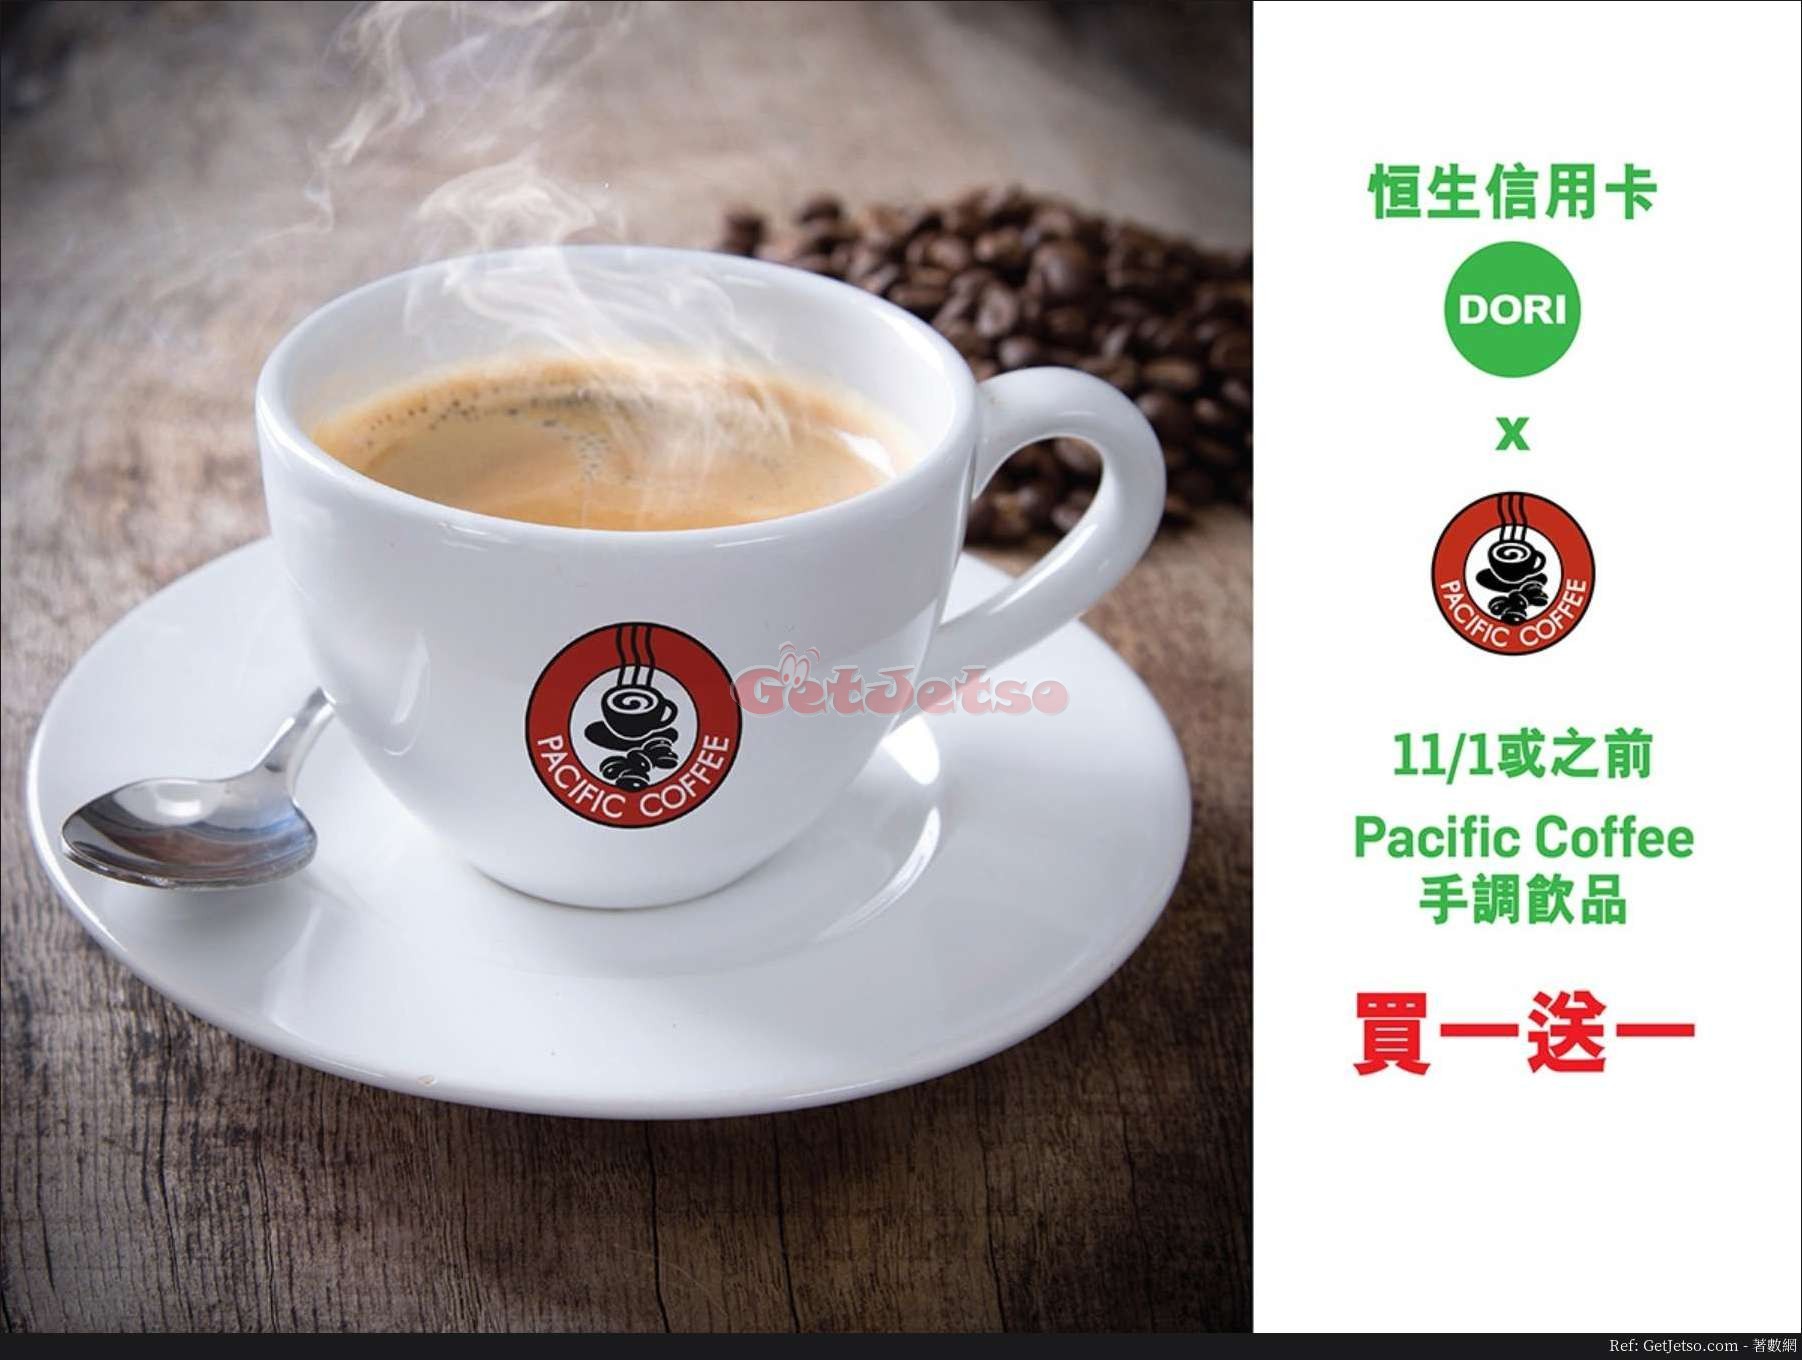 恒生信用卡Chat with DORI Pacific Coffee 手調飲品買1送1優惠(至19年月11日)圖片1